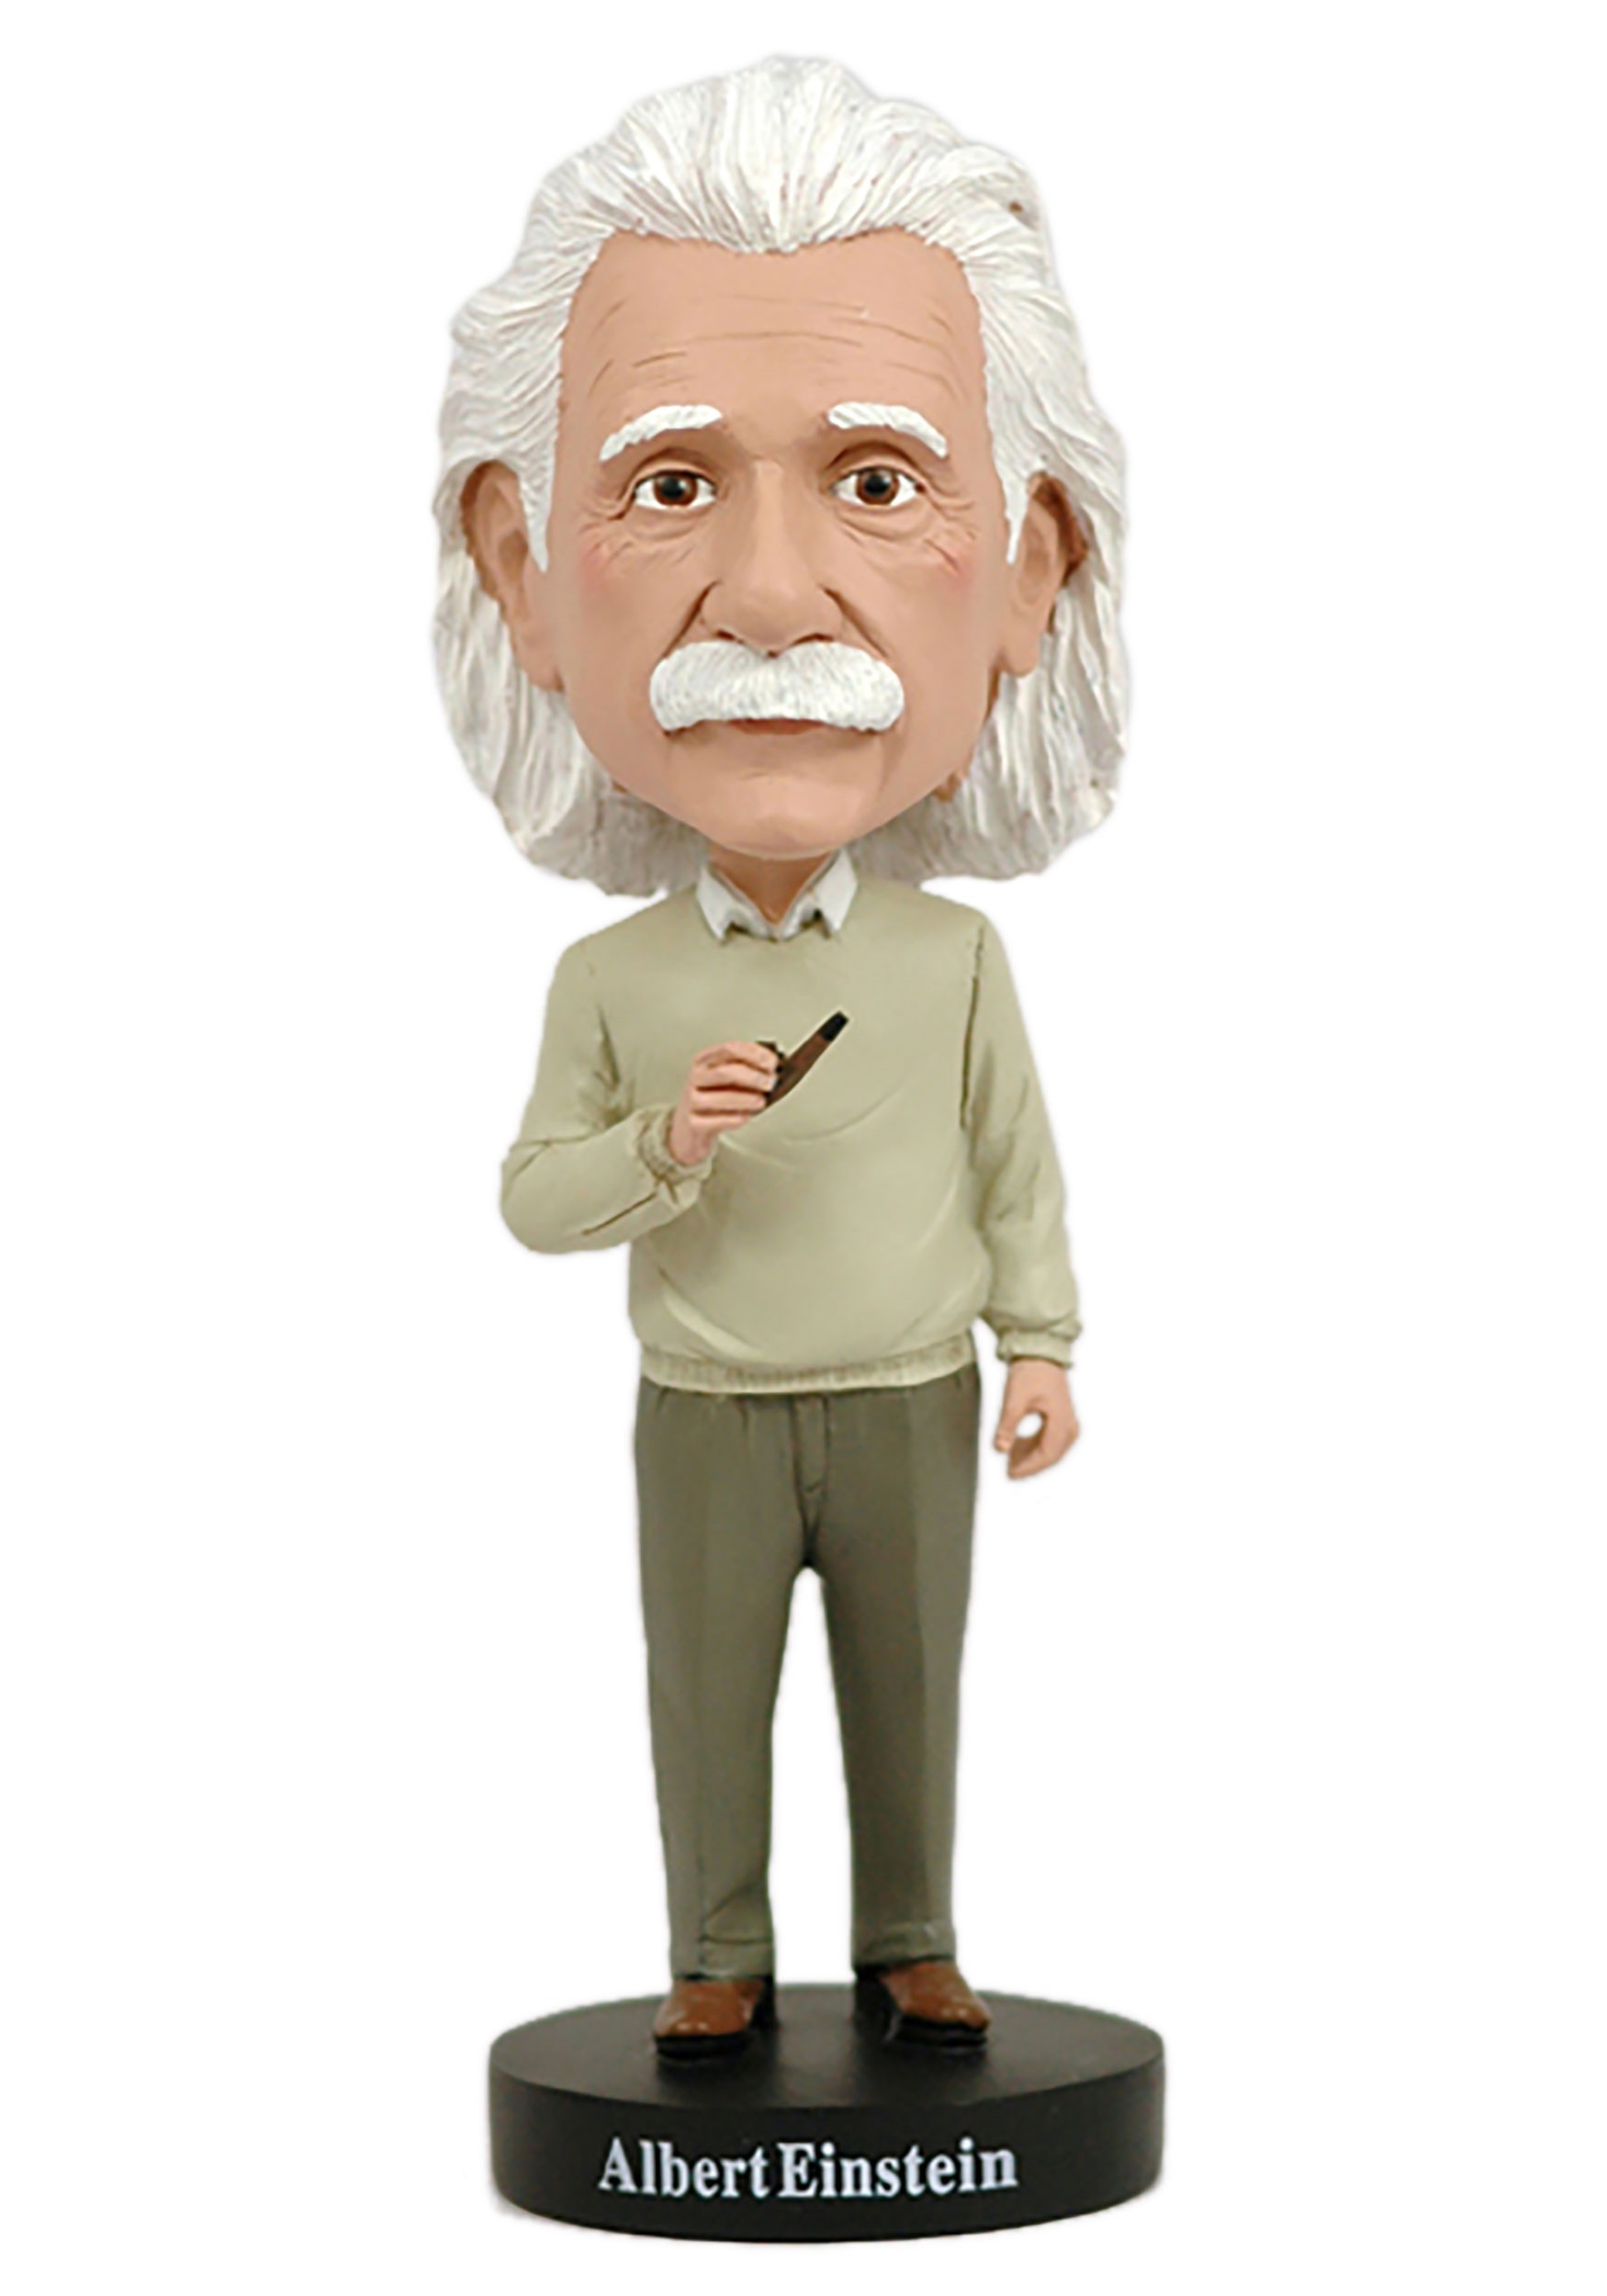 5" Albert Einstein Bobble Head Cartoon Scientist Doll Action Figure Statue Toys 